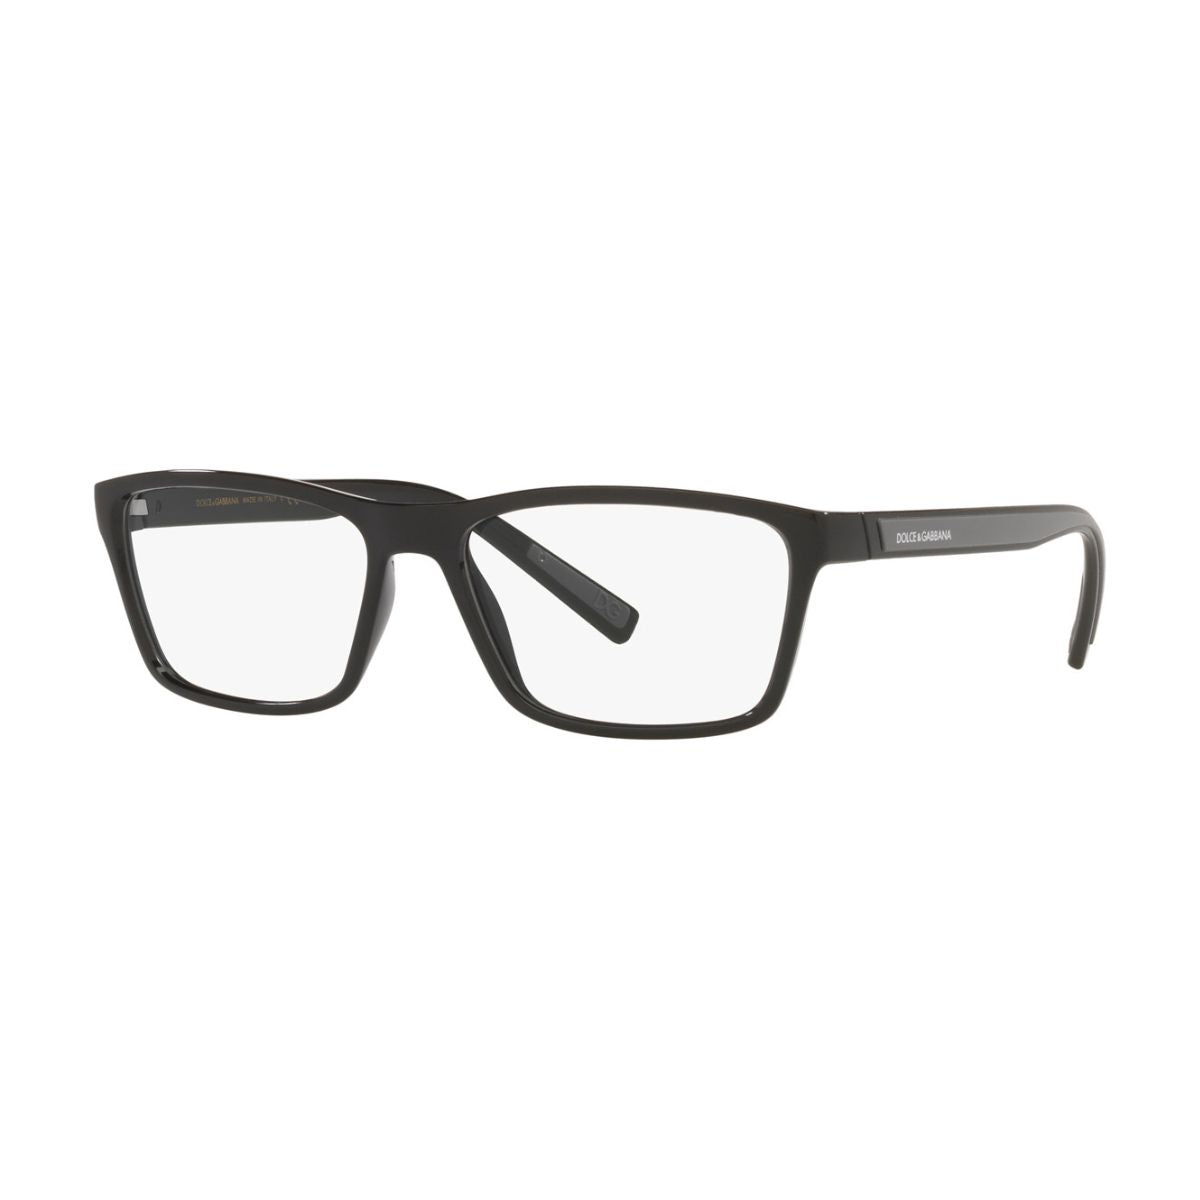 "buy Dolce&Gabbana 5072 501 eyesight glasses frame for men and women at optorium"